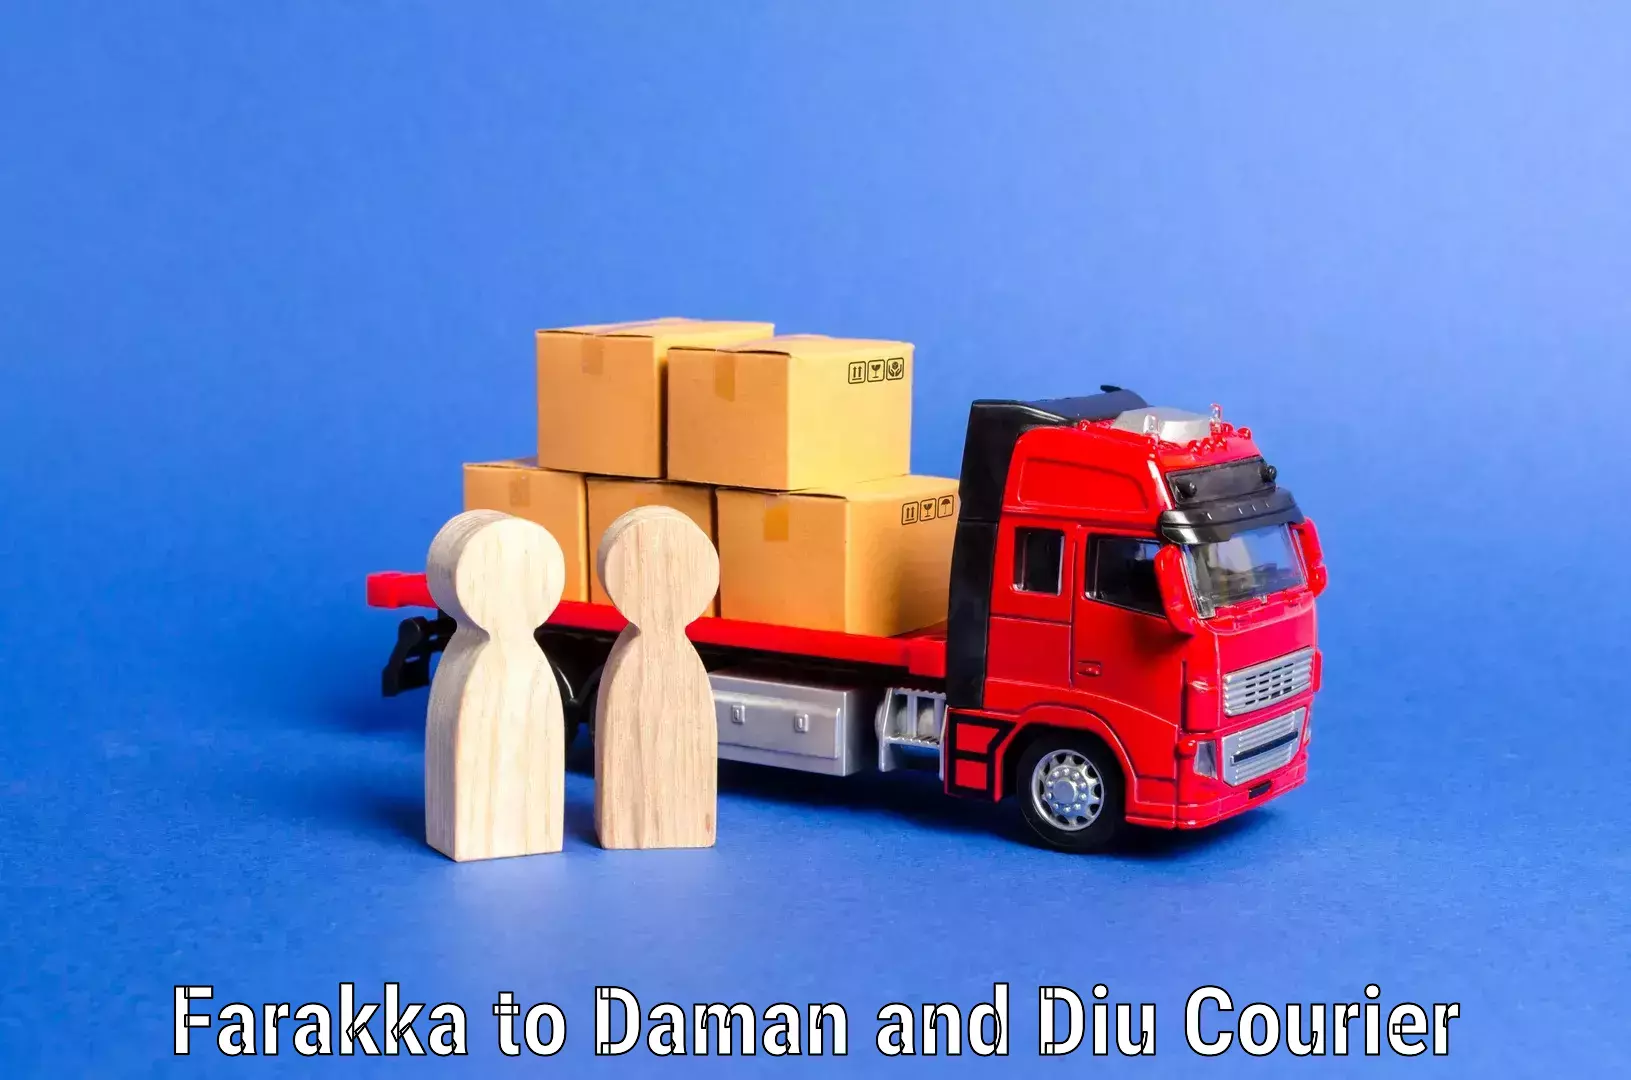 Professional movers in Farakka to Daman and Diu